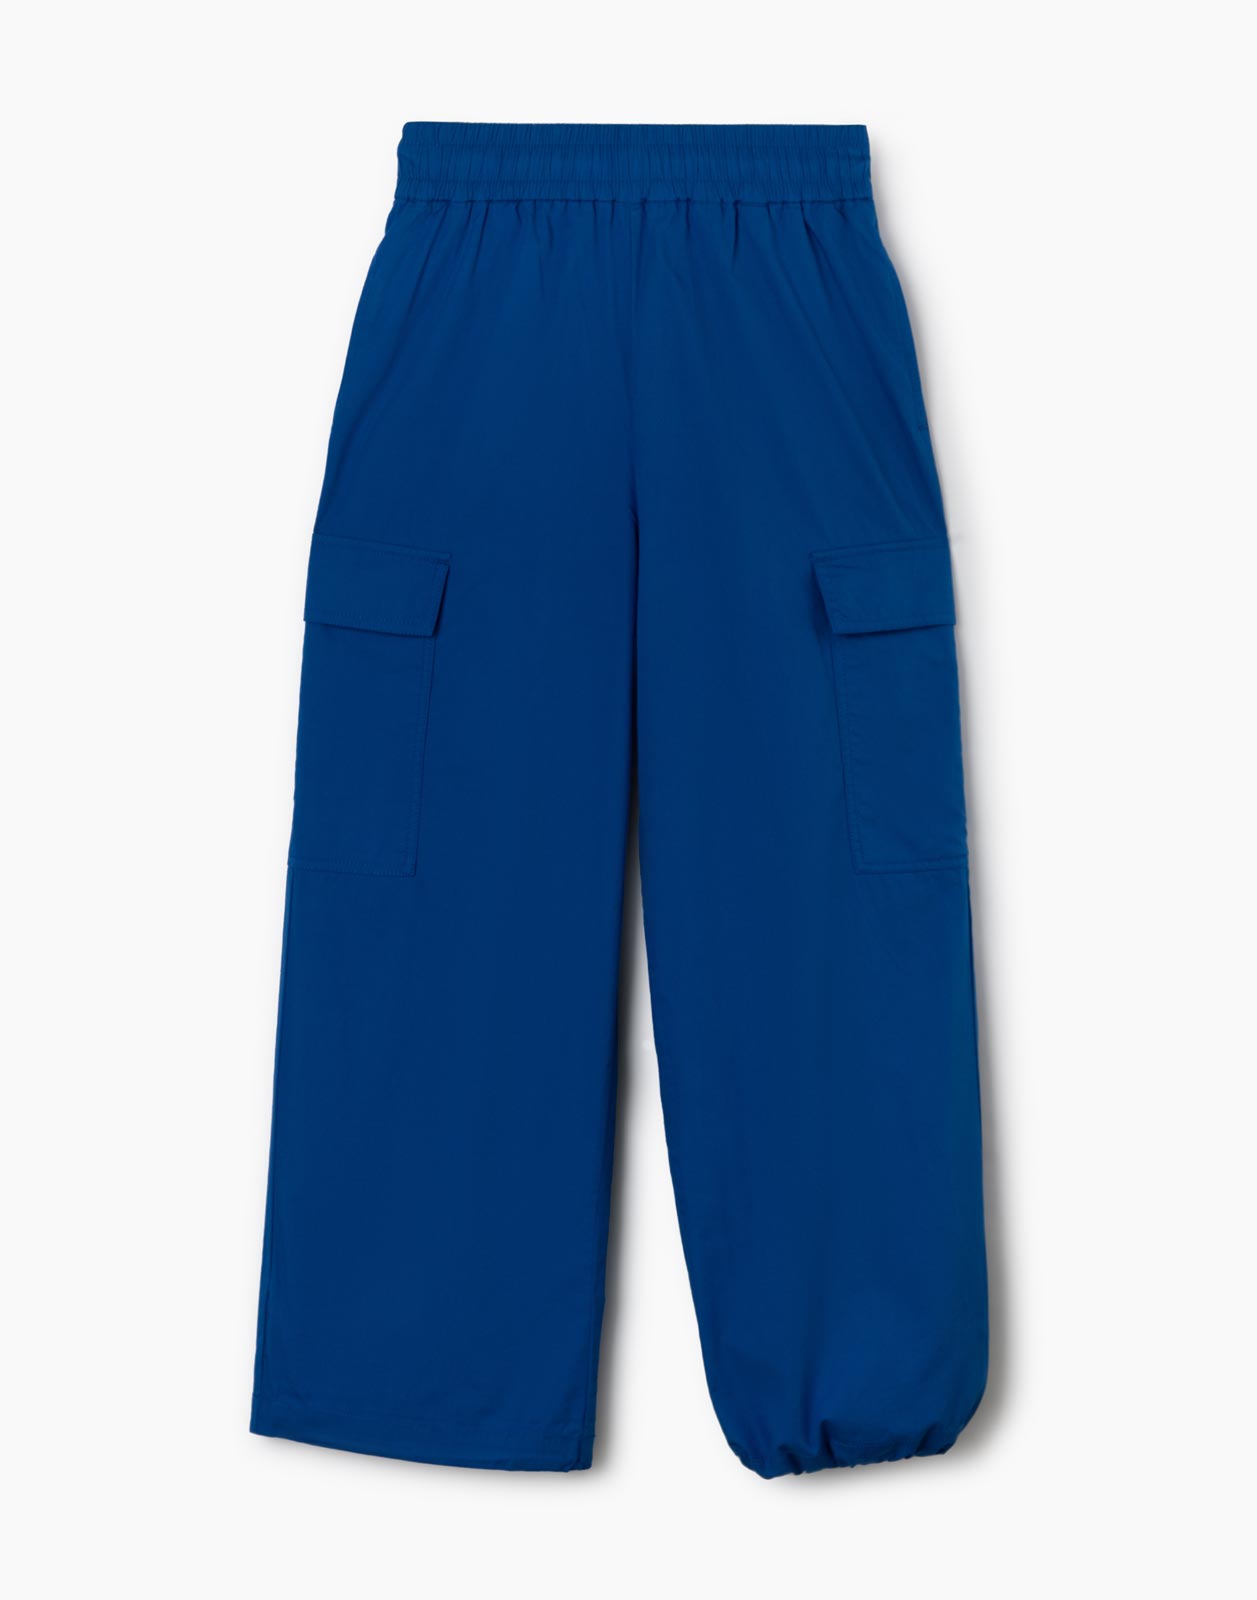 Синие брюки-трансформеры с карманами карго для девочки р.116